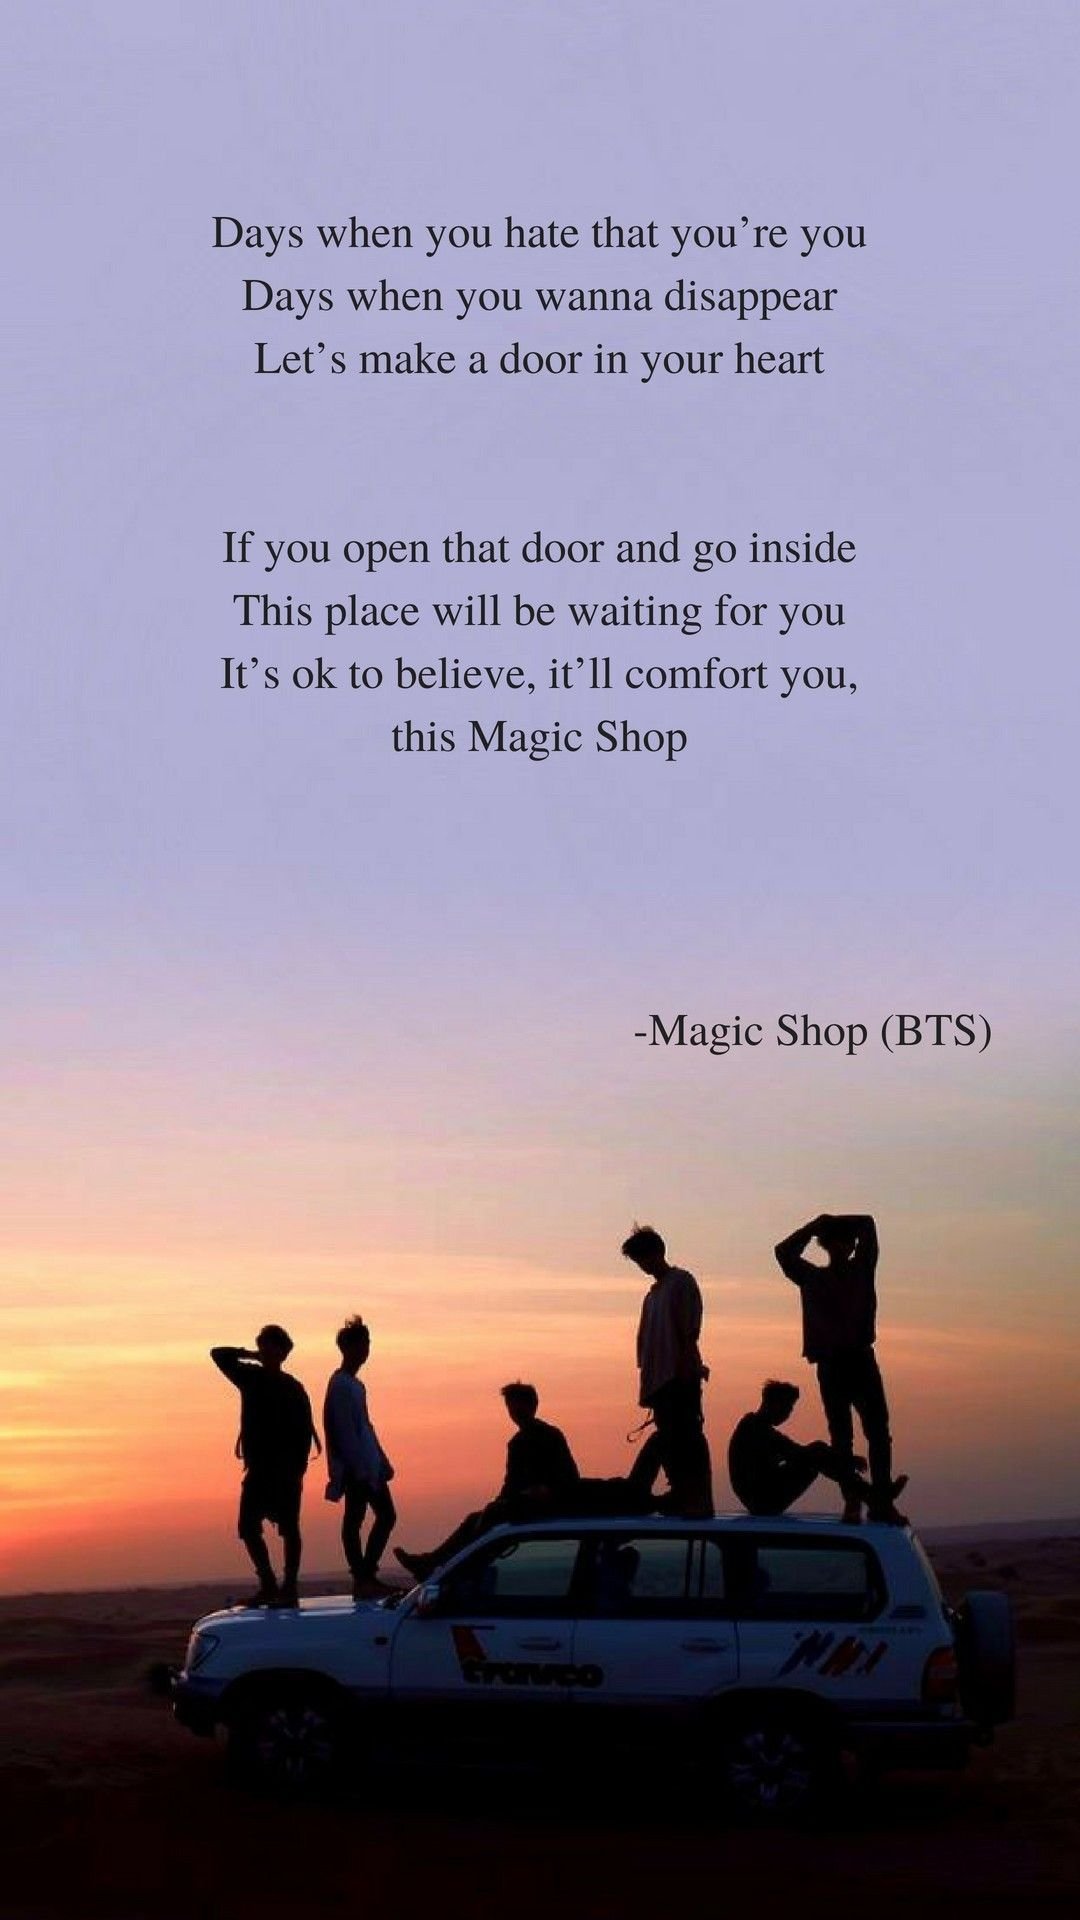 BTS Magic Shop